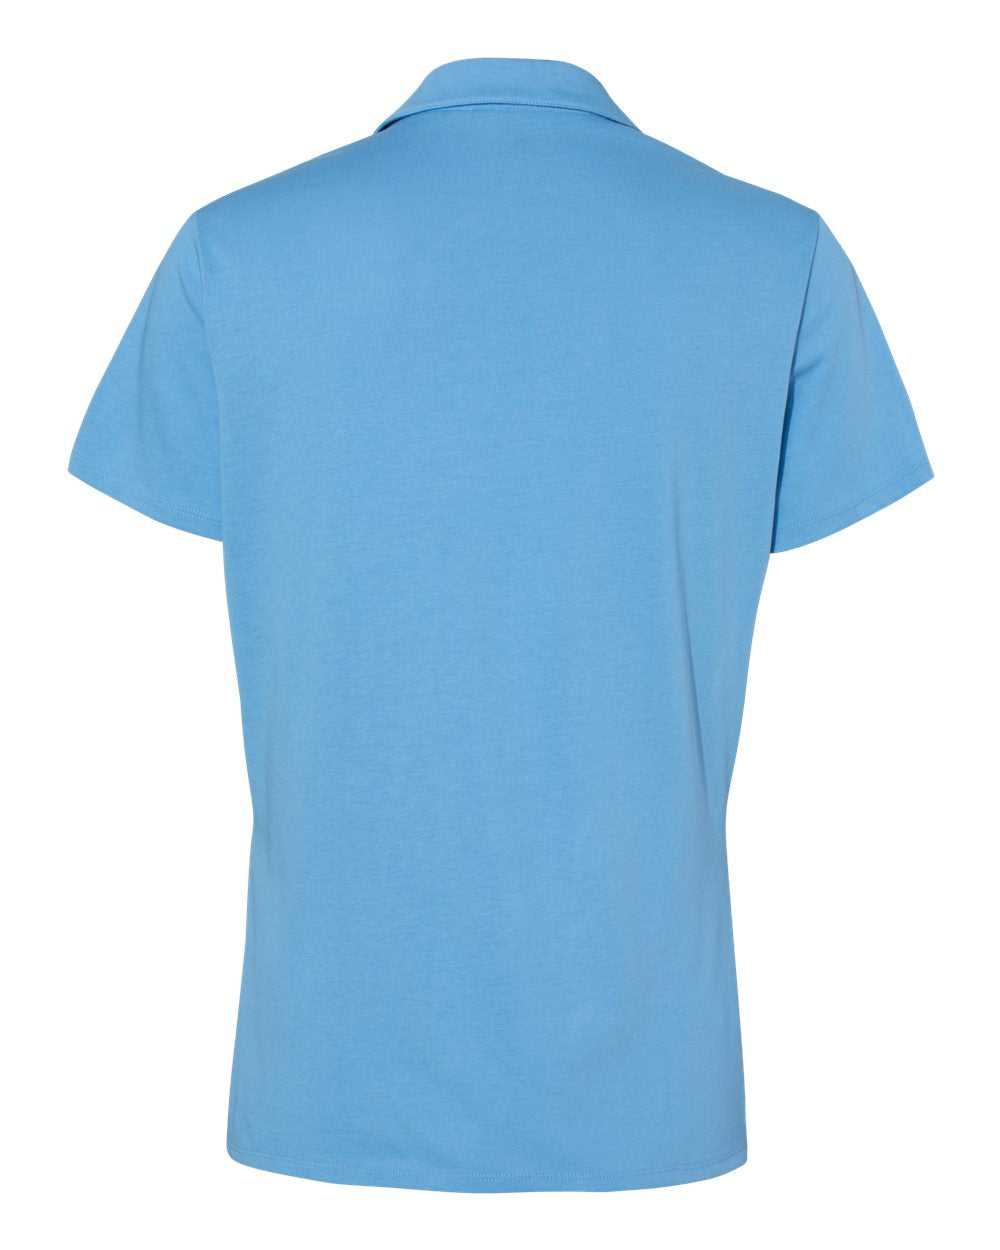 Adidas A323 Women&#39;s Cotton Blend Sport Shirt - Light Blue - HIT a Double